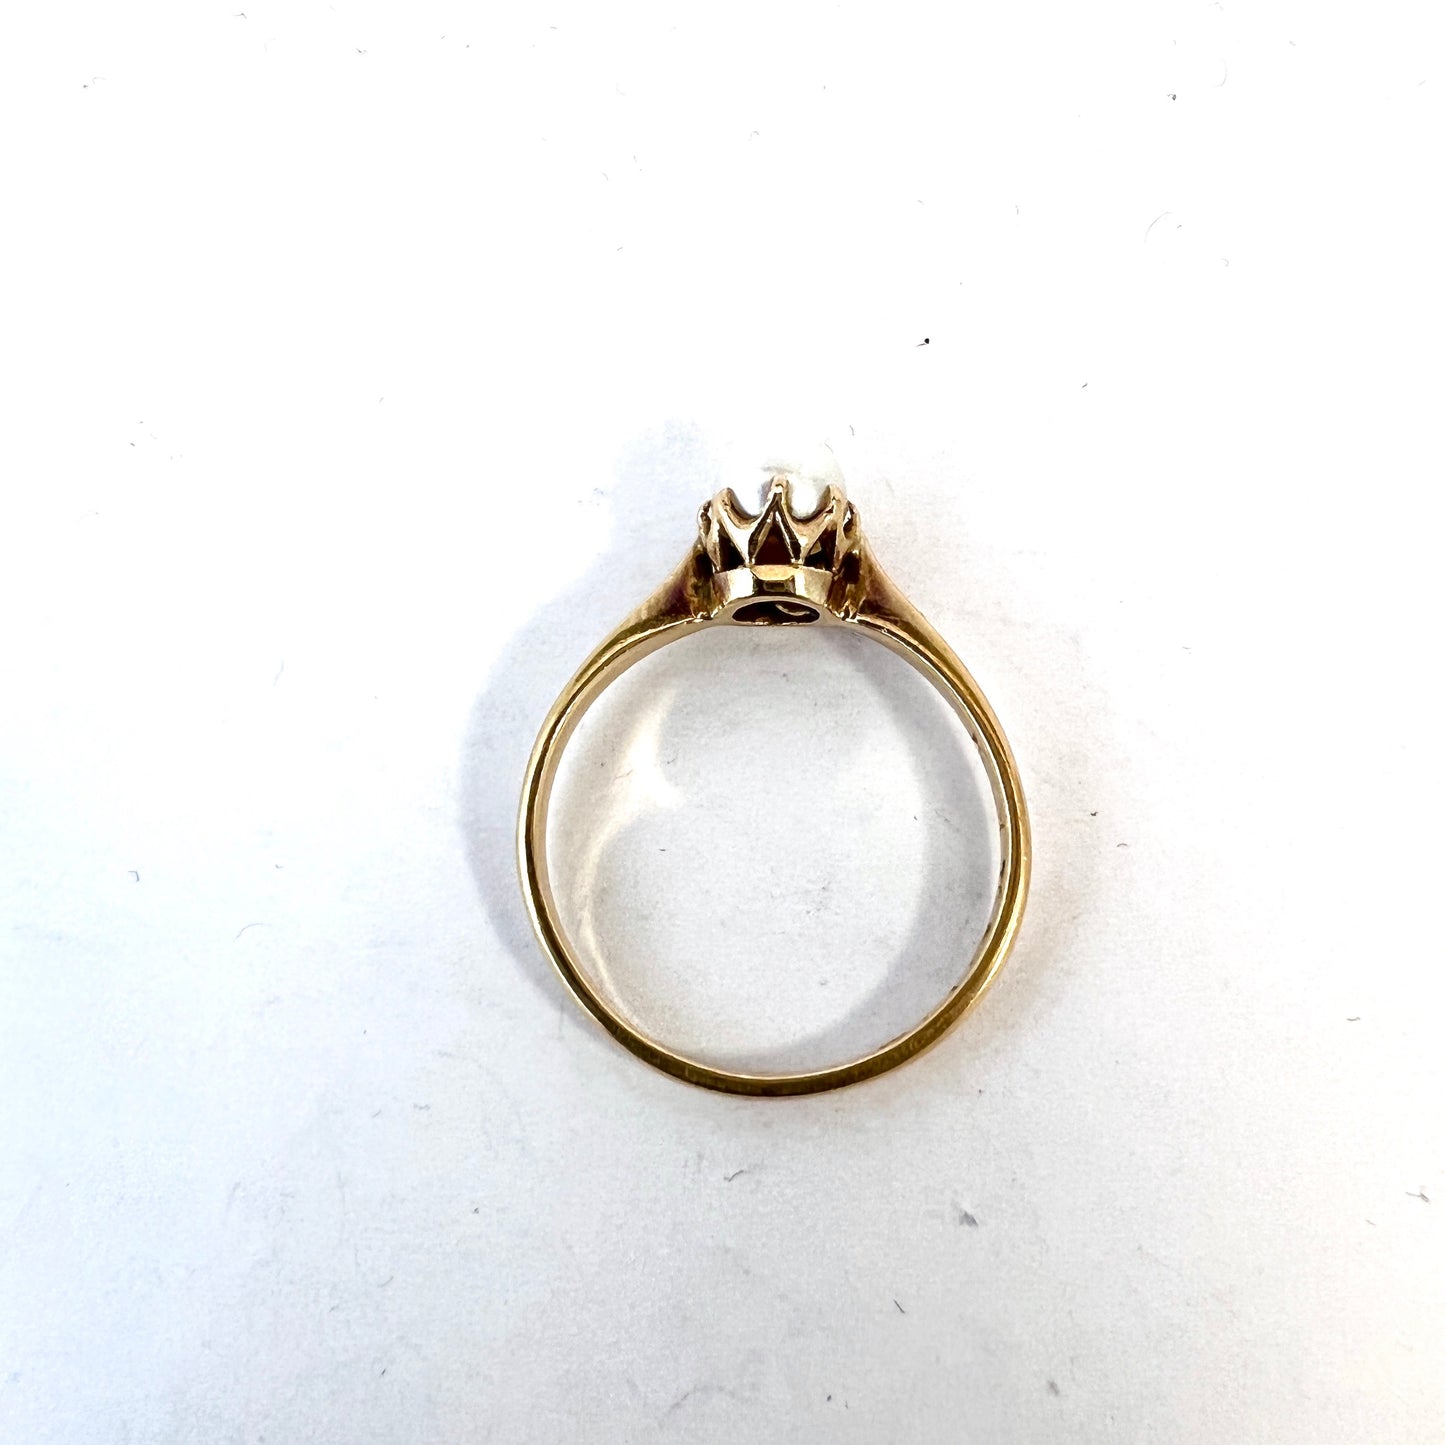 Stockholm, Sweden year 1927. Vintage 18k Gold Pearl Ring.